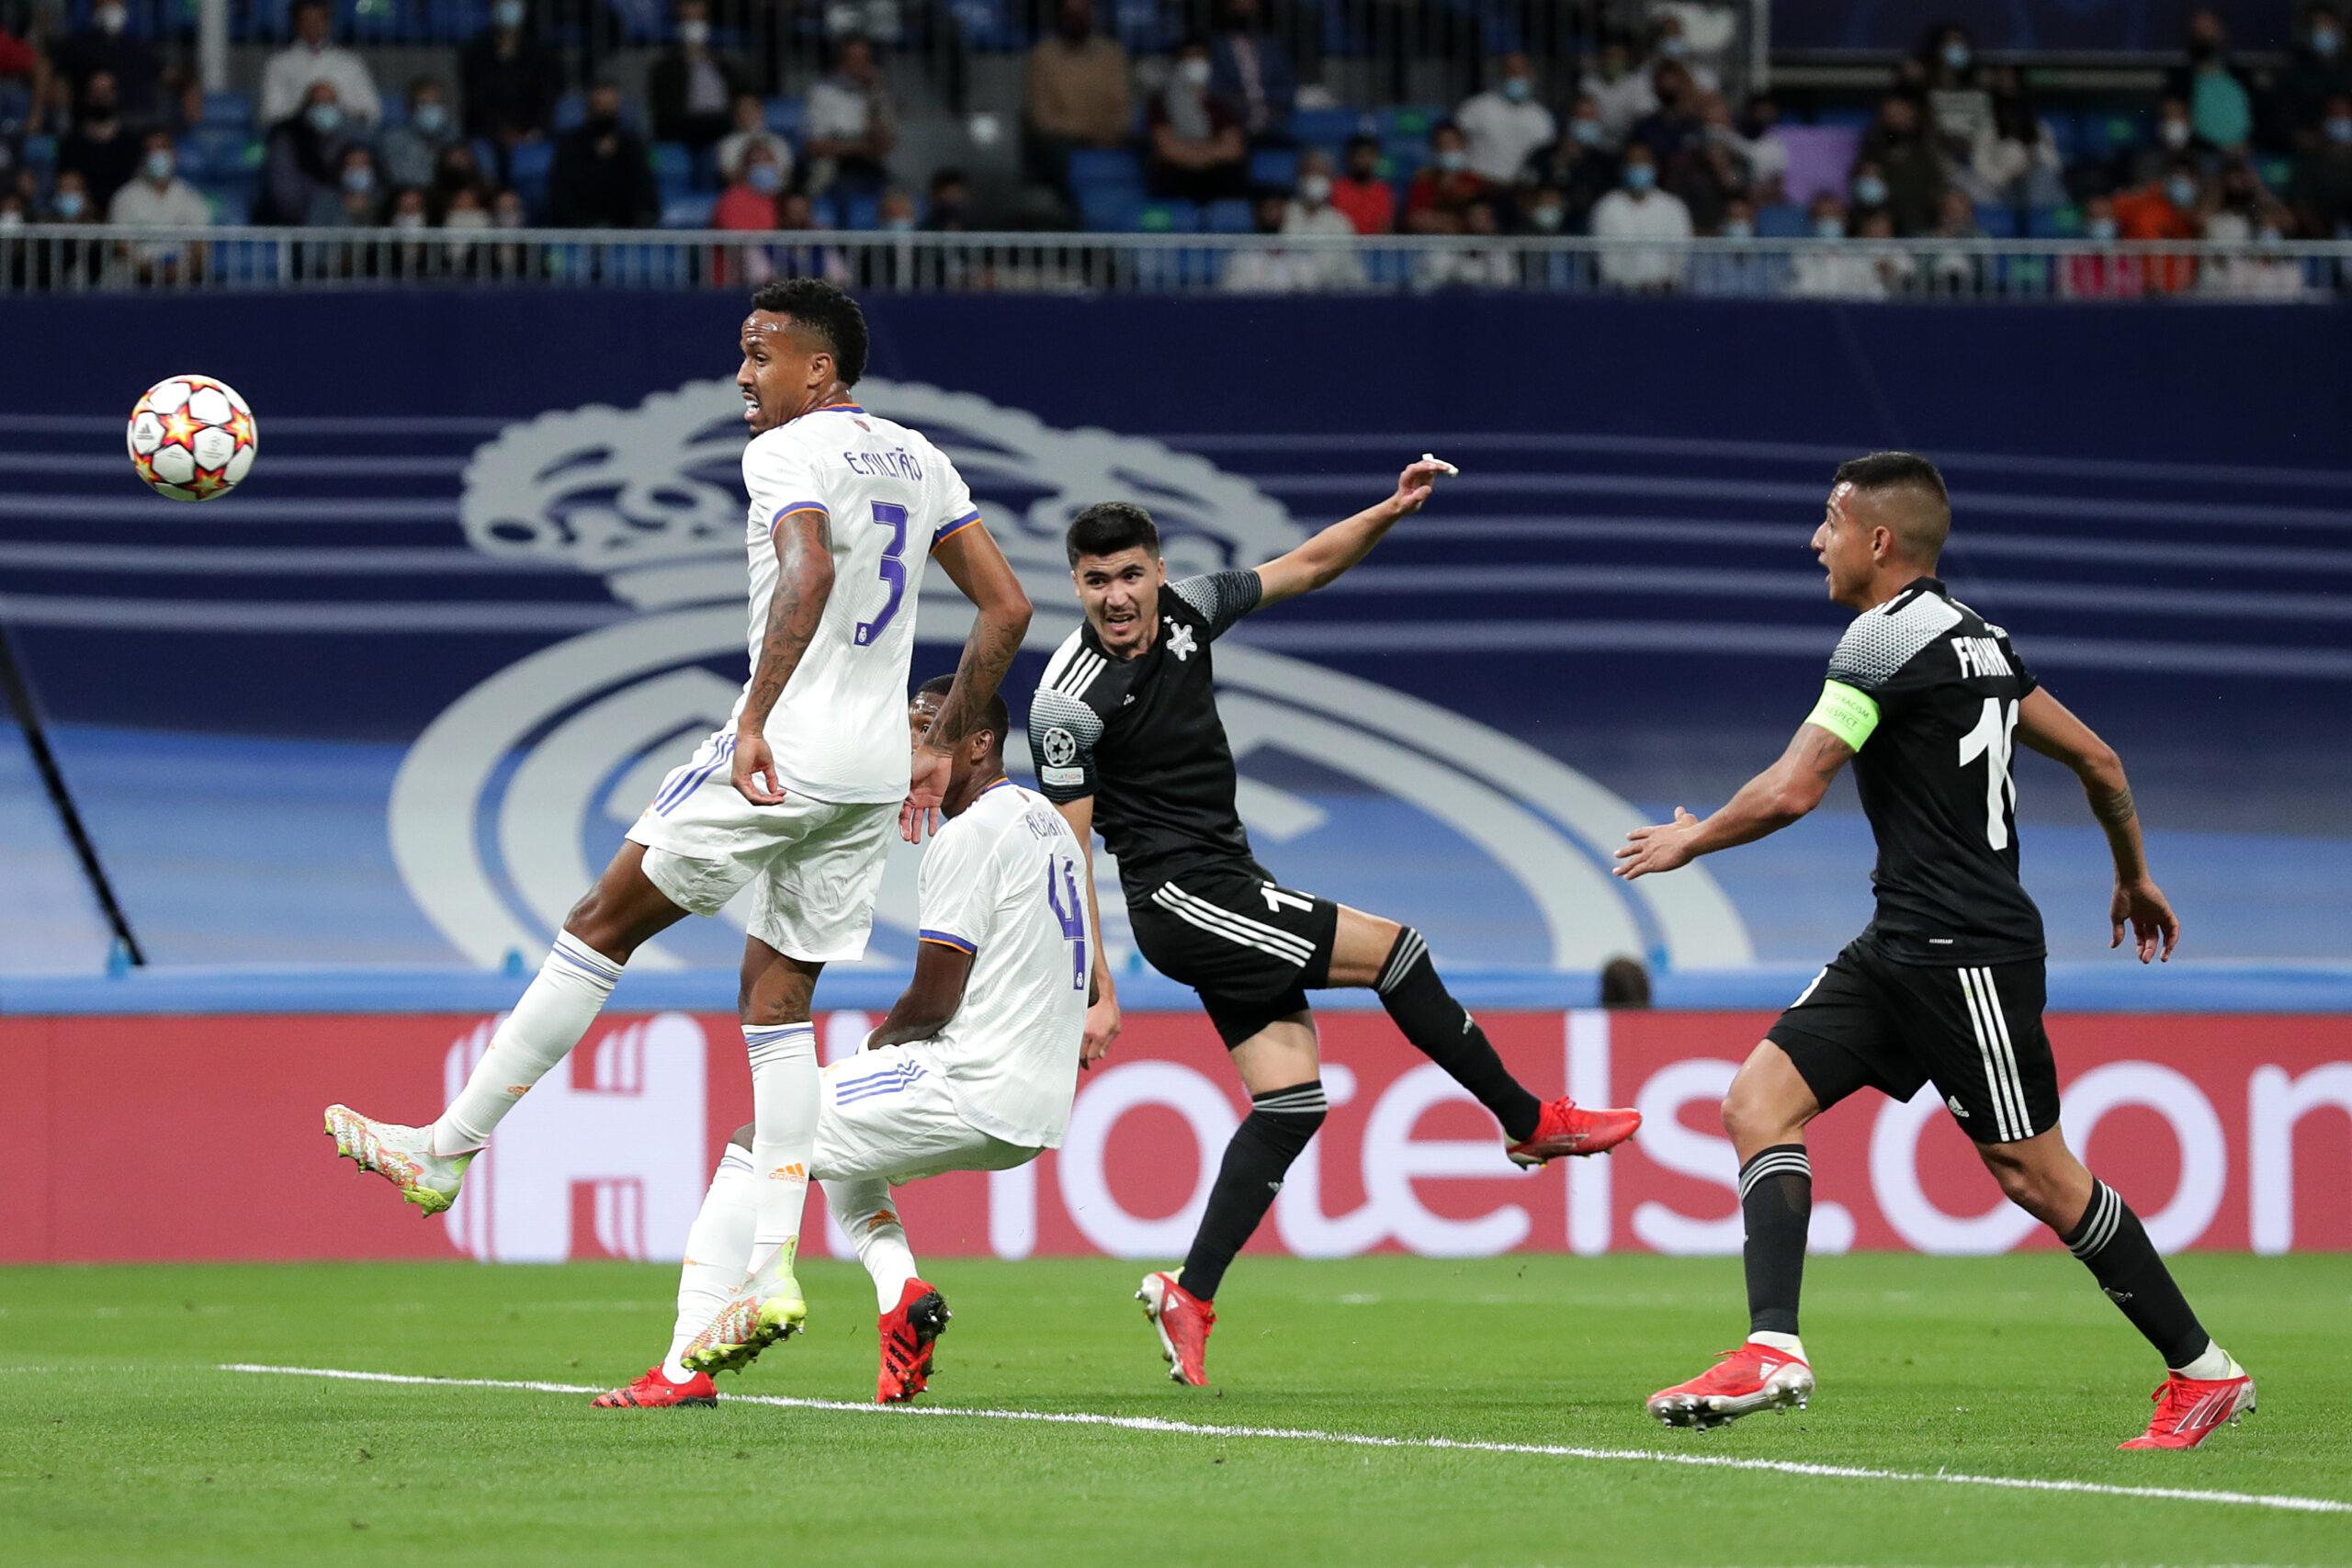  Real Madrid cae derrotado 2-1 ante un sorprendente Sherrif